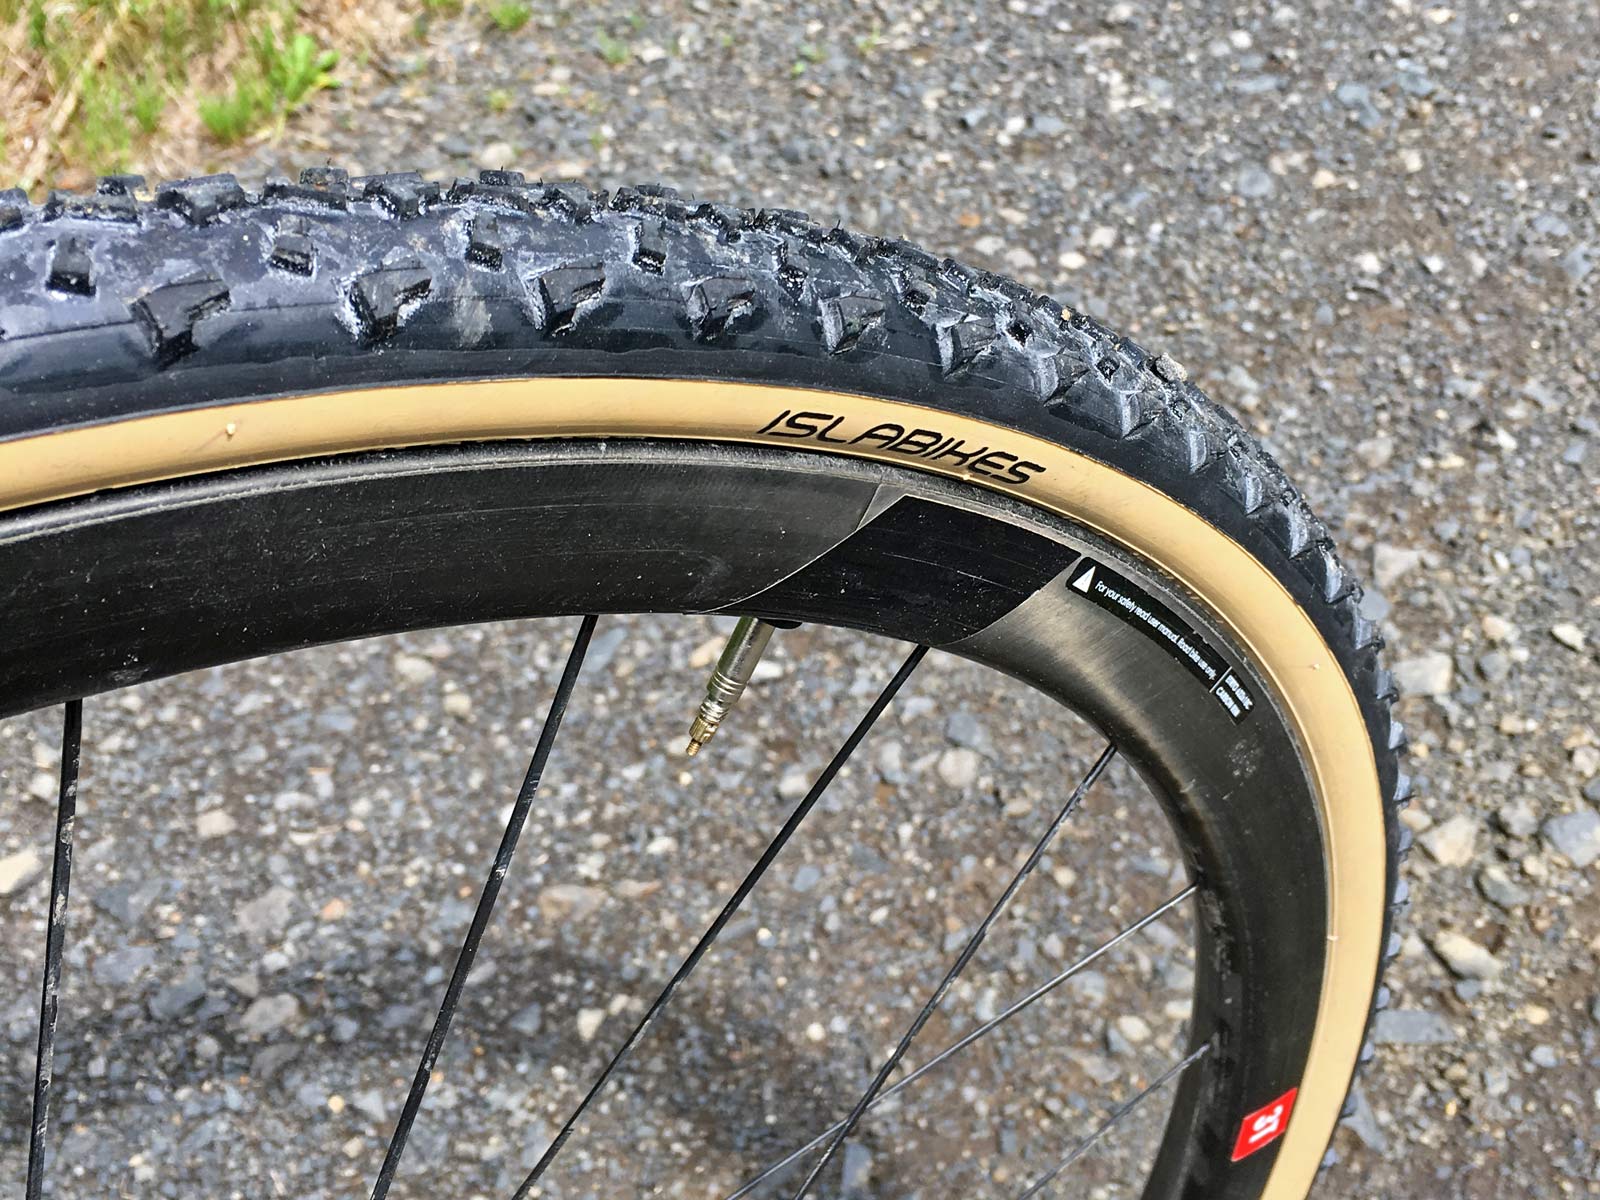 32mm cyclocross tires